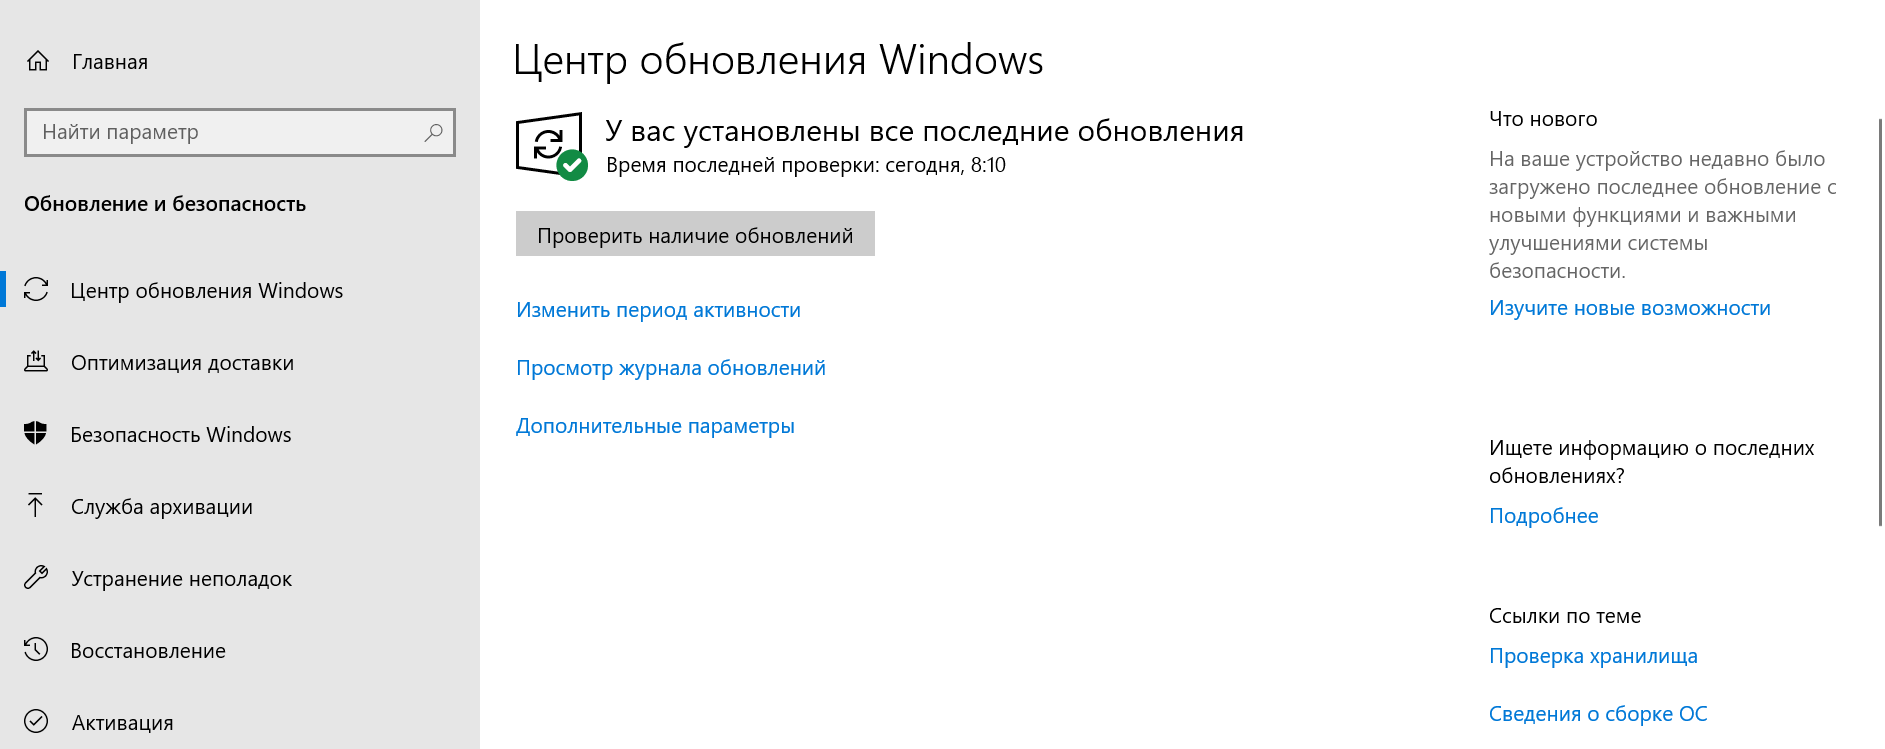 Запустить центр безопасности. Windows 10 параметры обновление и безопасность. Где найти параметры безопасности Windows 10. Обновление и безопасность где находится. Обновление и безопасность Windows 10 где находится.